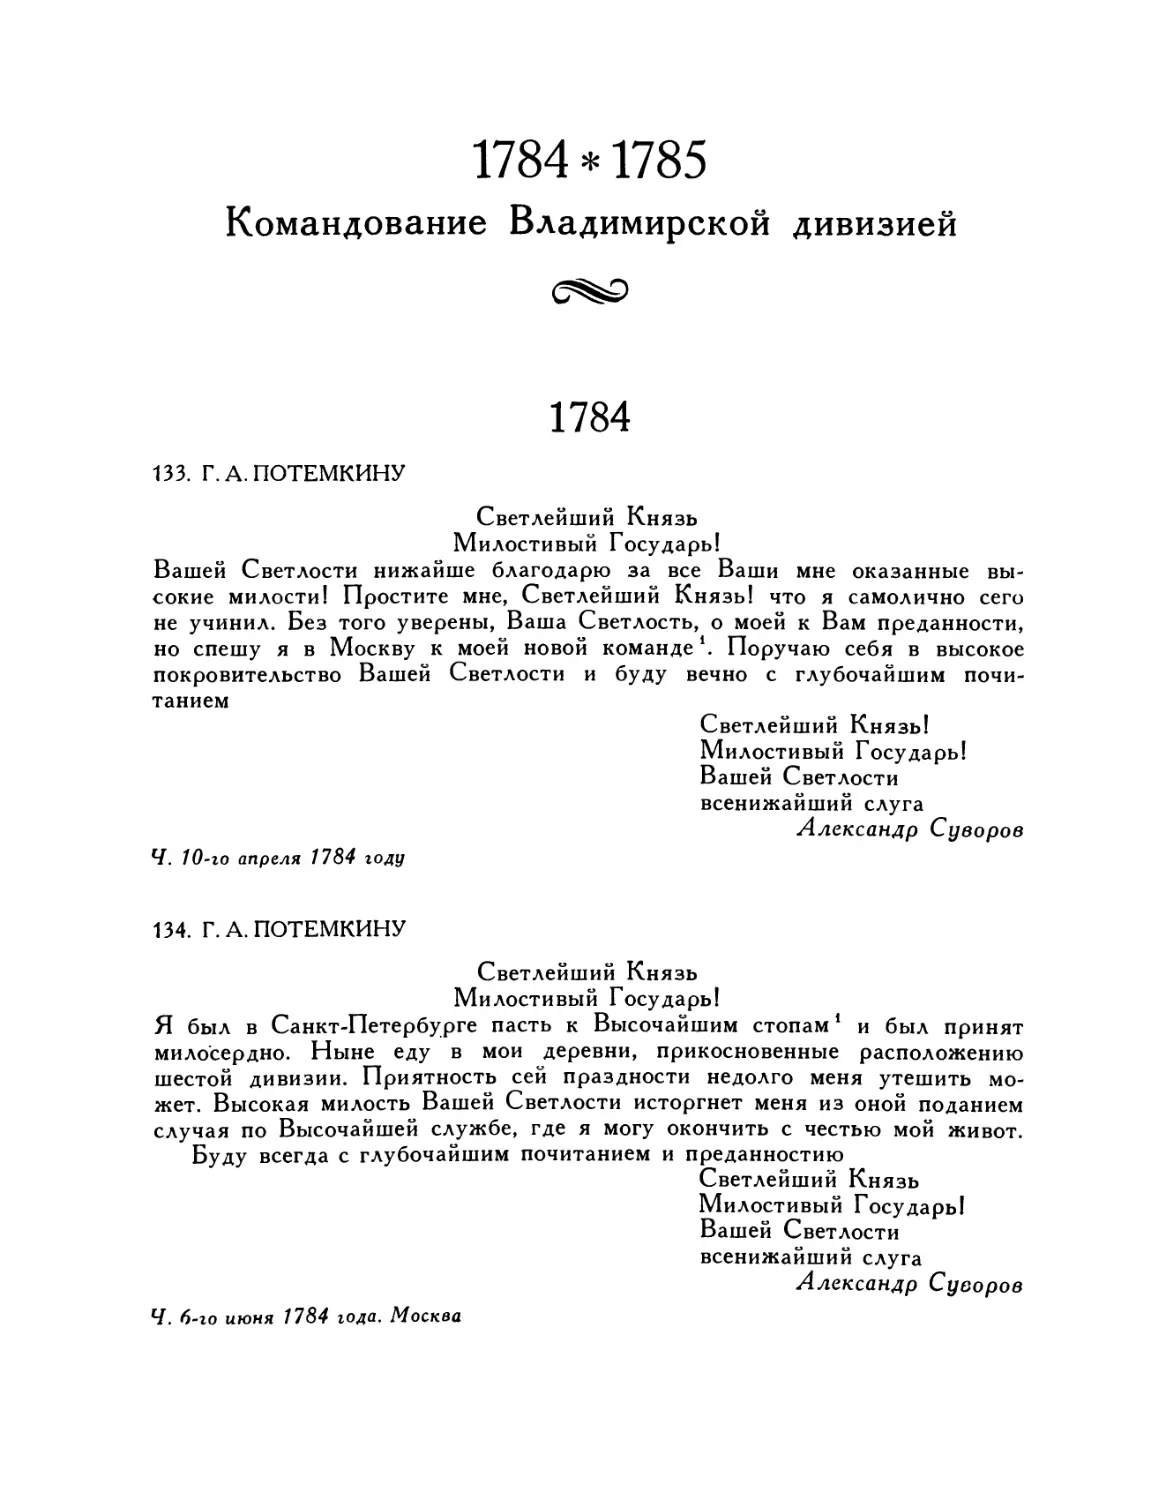 1784—1785 Командование Владимирской дивизией
134. Г.А.Потемкину. 6.VI.1784